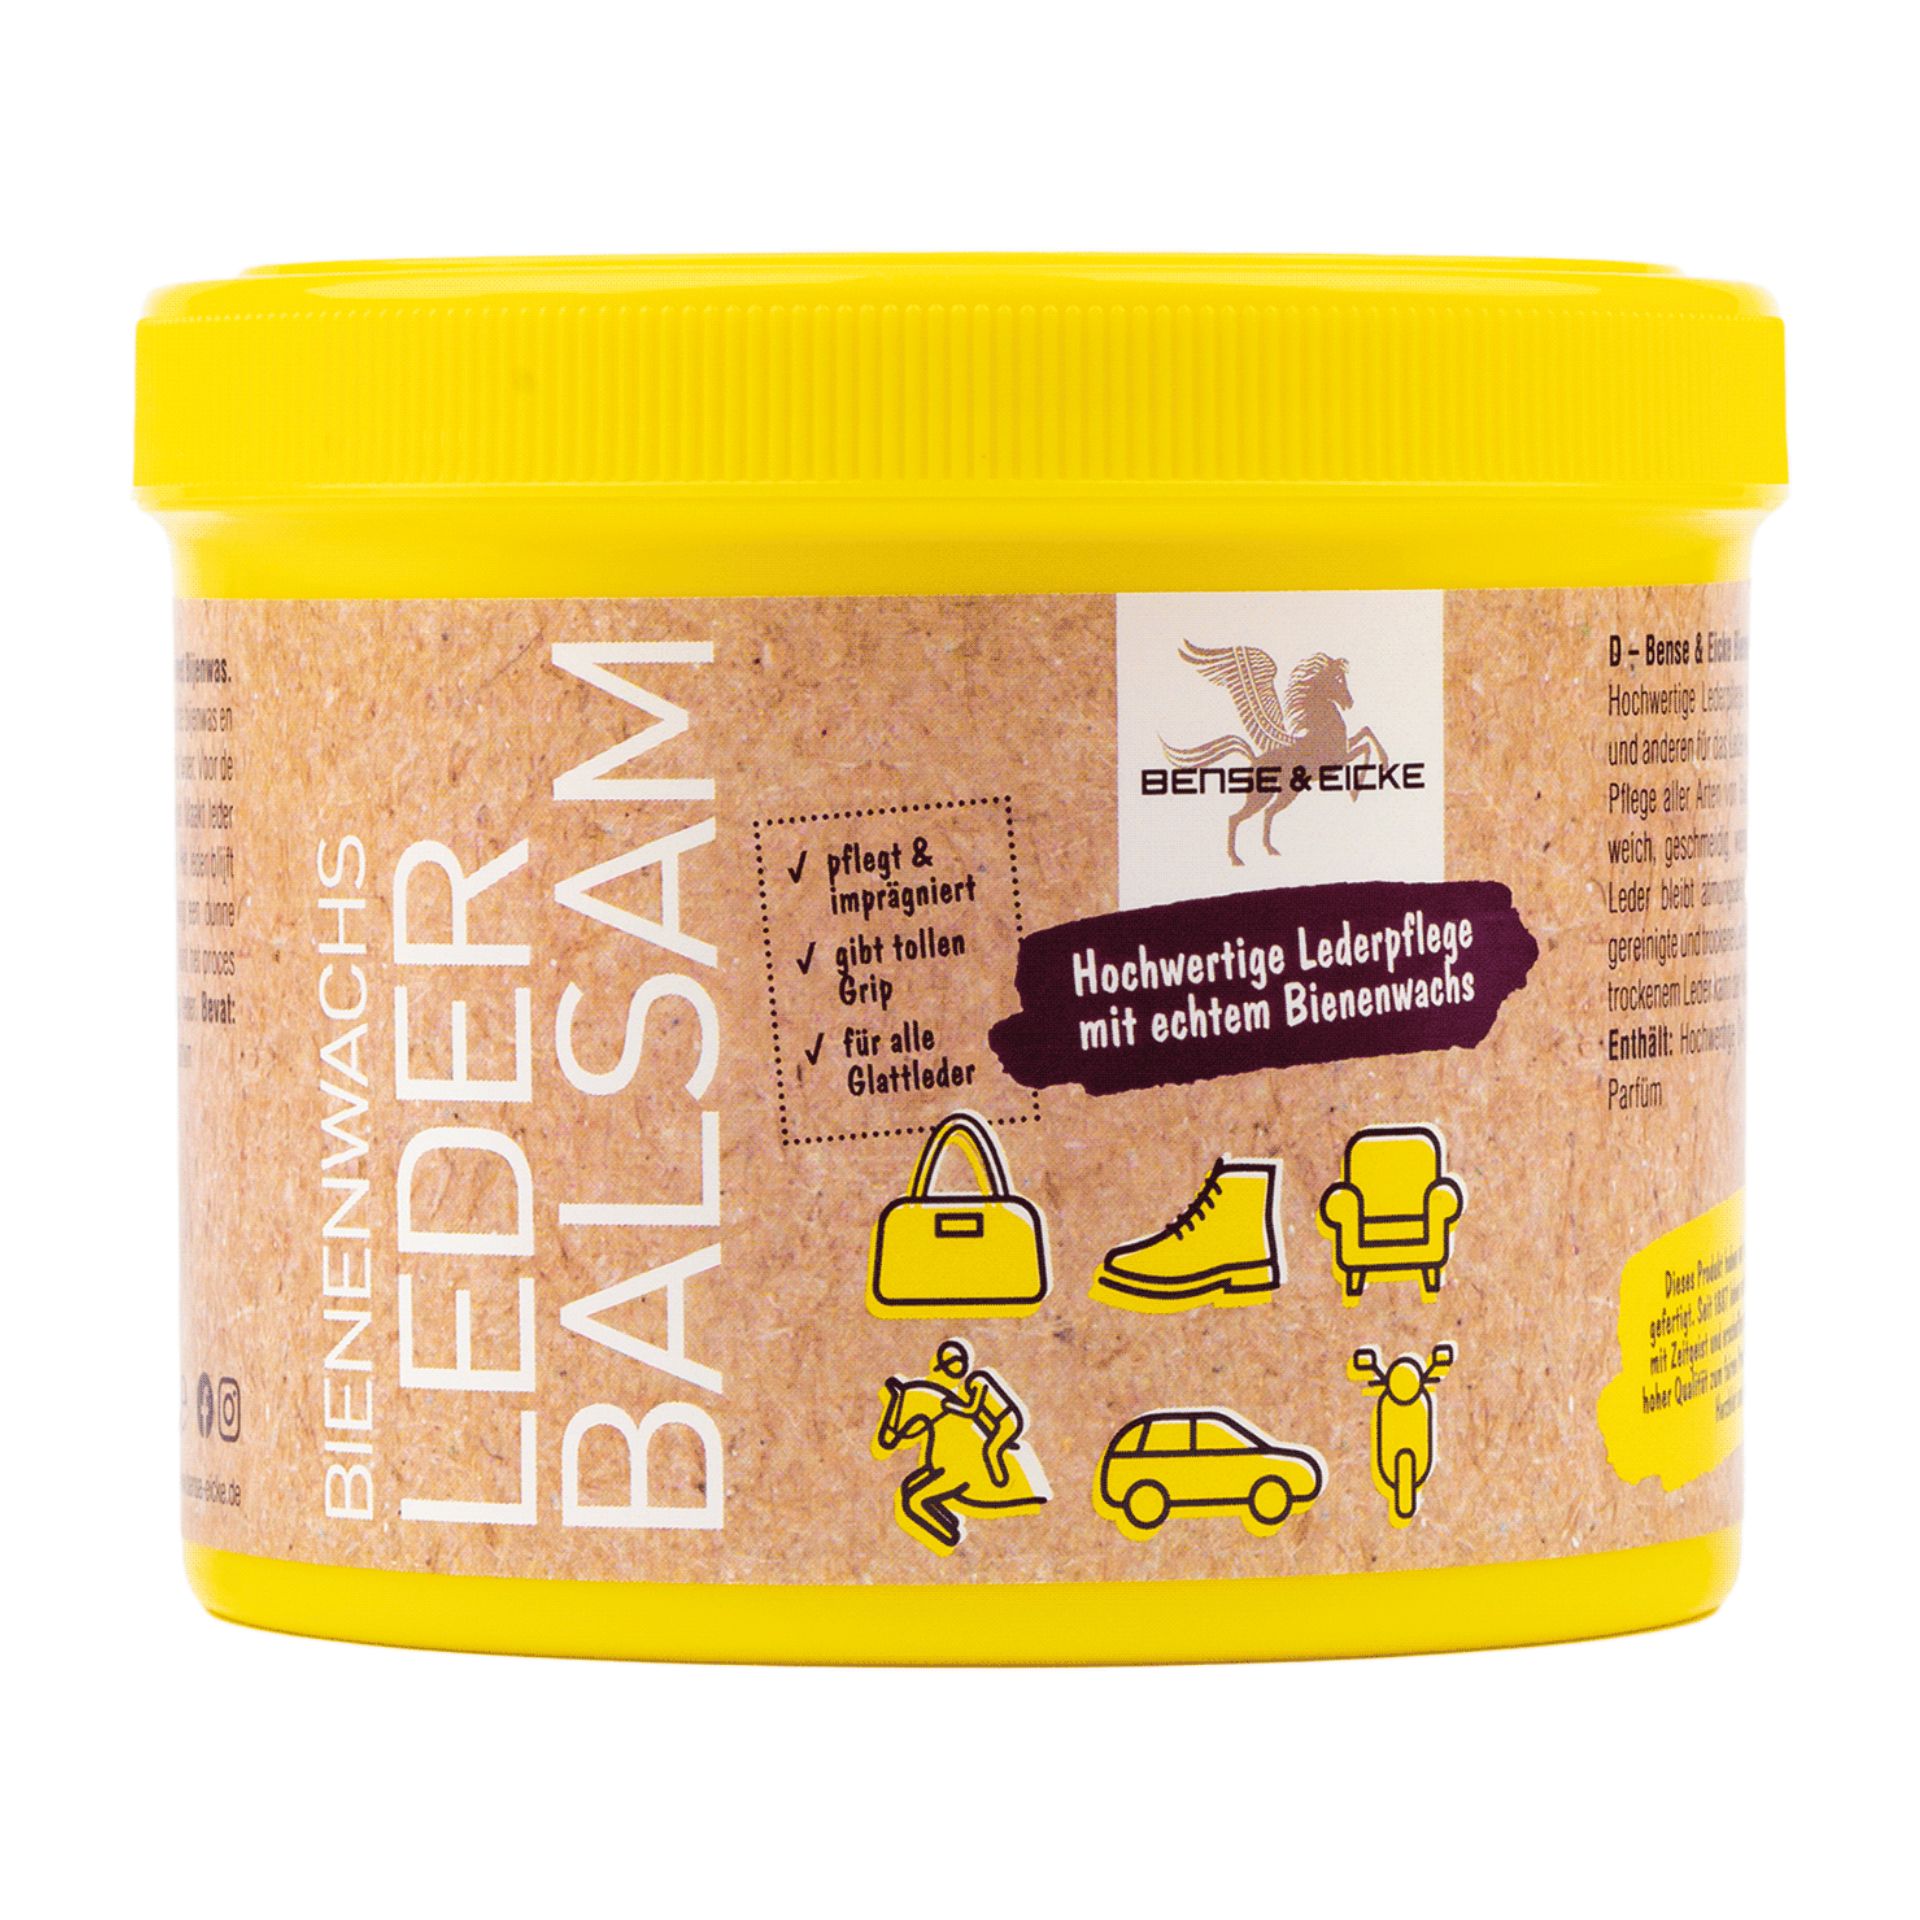 Bense & Eicke Bienenwachs-Leder-Balsam, 500 ml